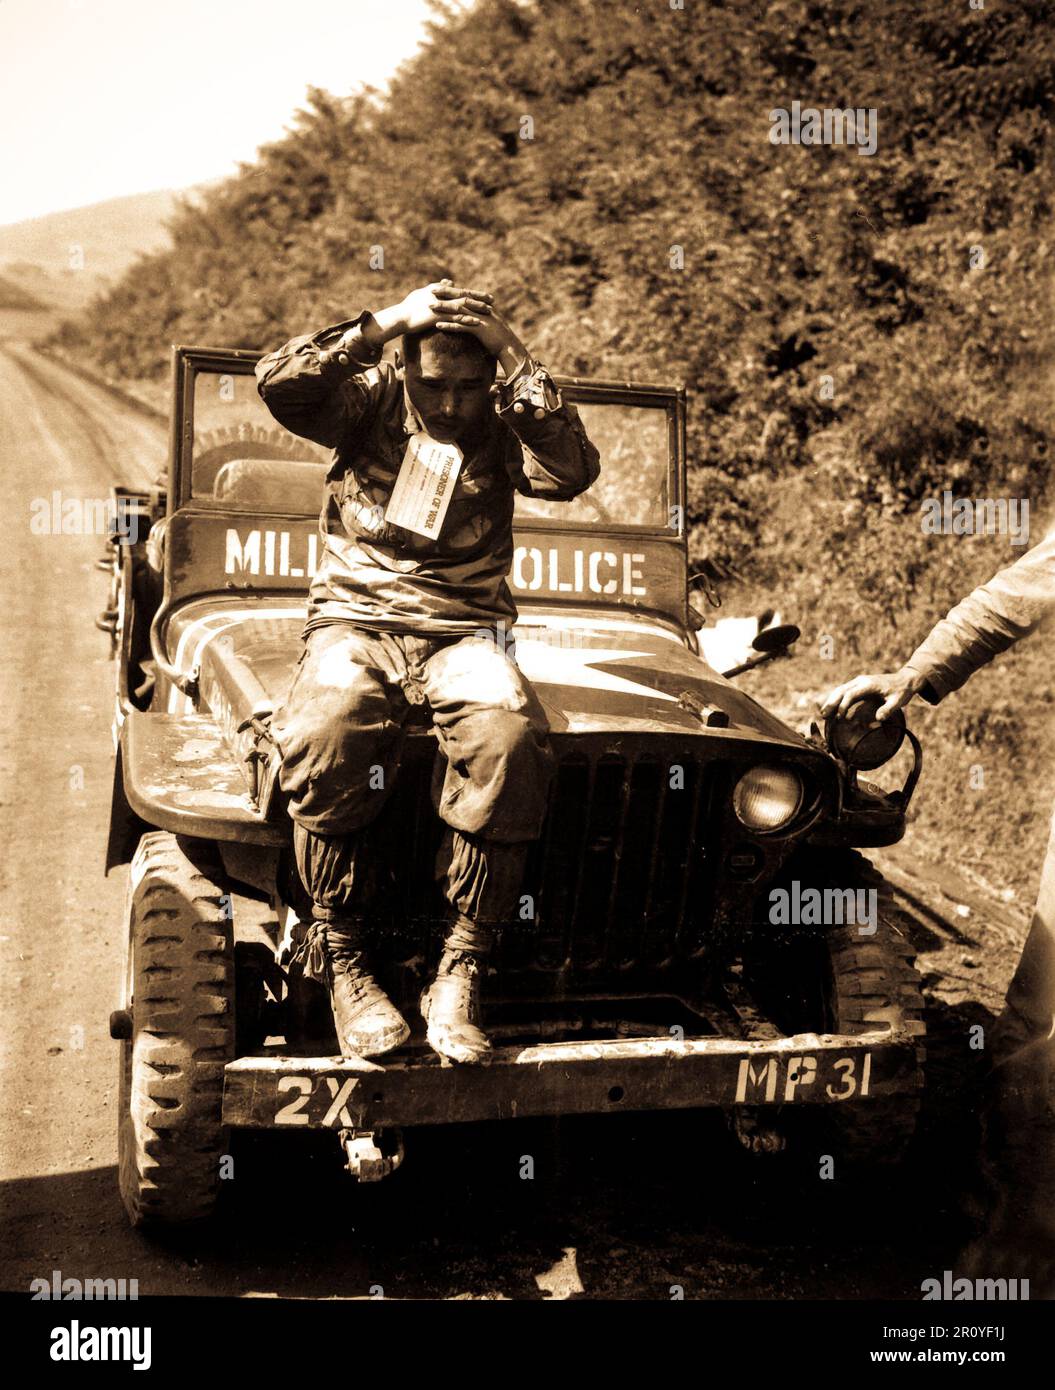 Nordkoreanische Gefangene der Marines, der Feind wieder bei der Bekämpfung der Naktong Fluss gerollt.  Er tragen einen "Prisoner Of War" Tag und wurde gemäß UN Regeln der internationalen Kriegsführung behandelt.  4. September 1950.  S. Foto von Sgt. Walter W. Frank.  (Marine Corps) Stockfoto